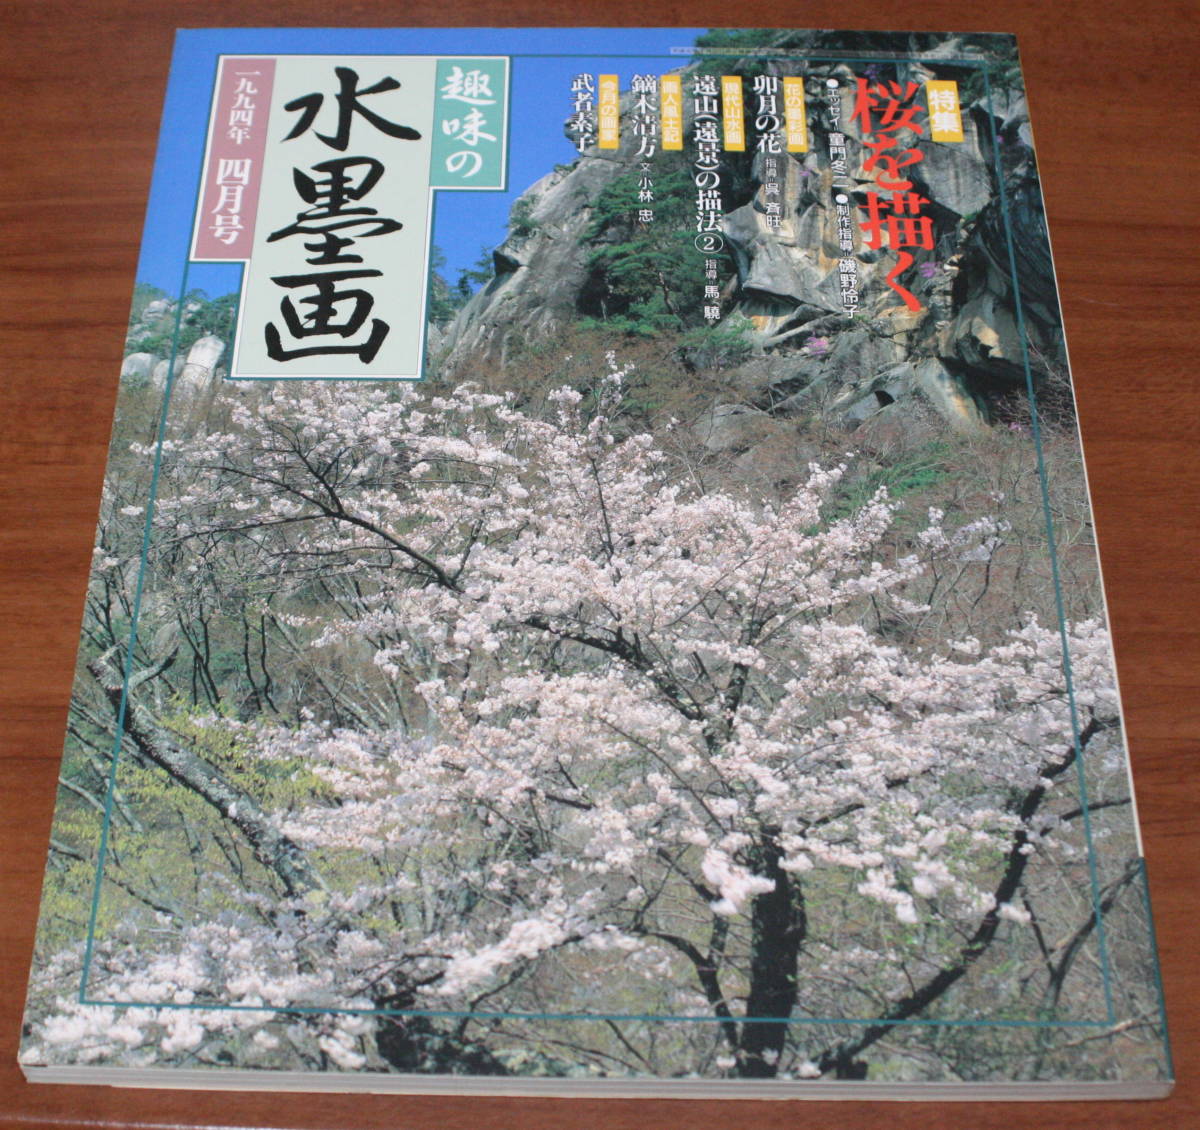 *70* хобби. картина в жанре суйбоку 1994 год 4 месяц номер Sakura ... старая книга *